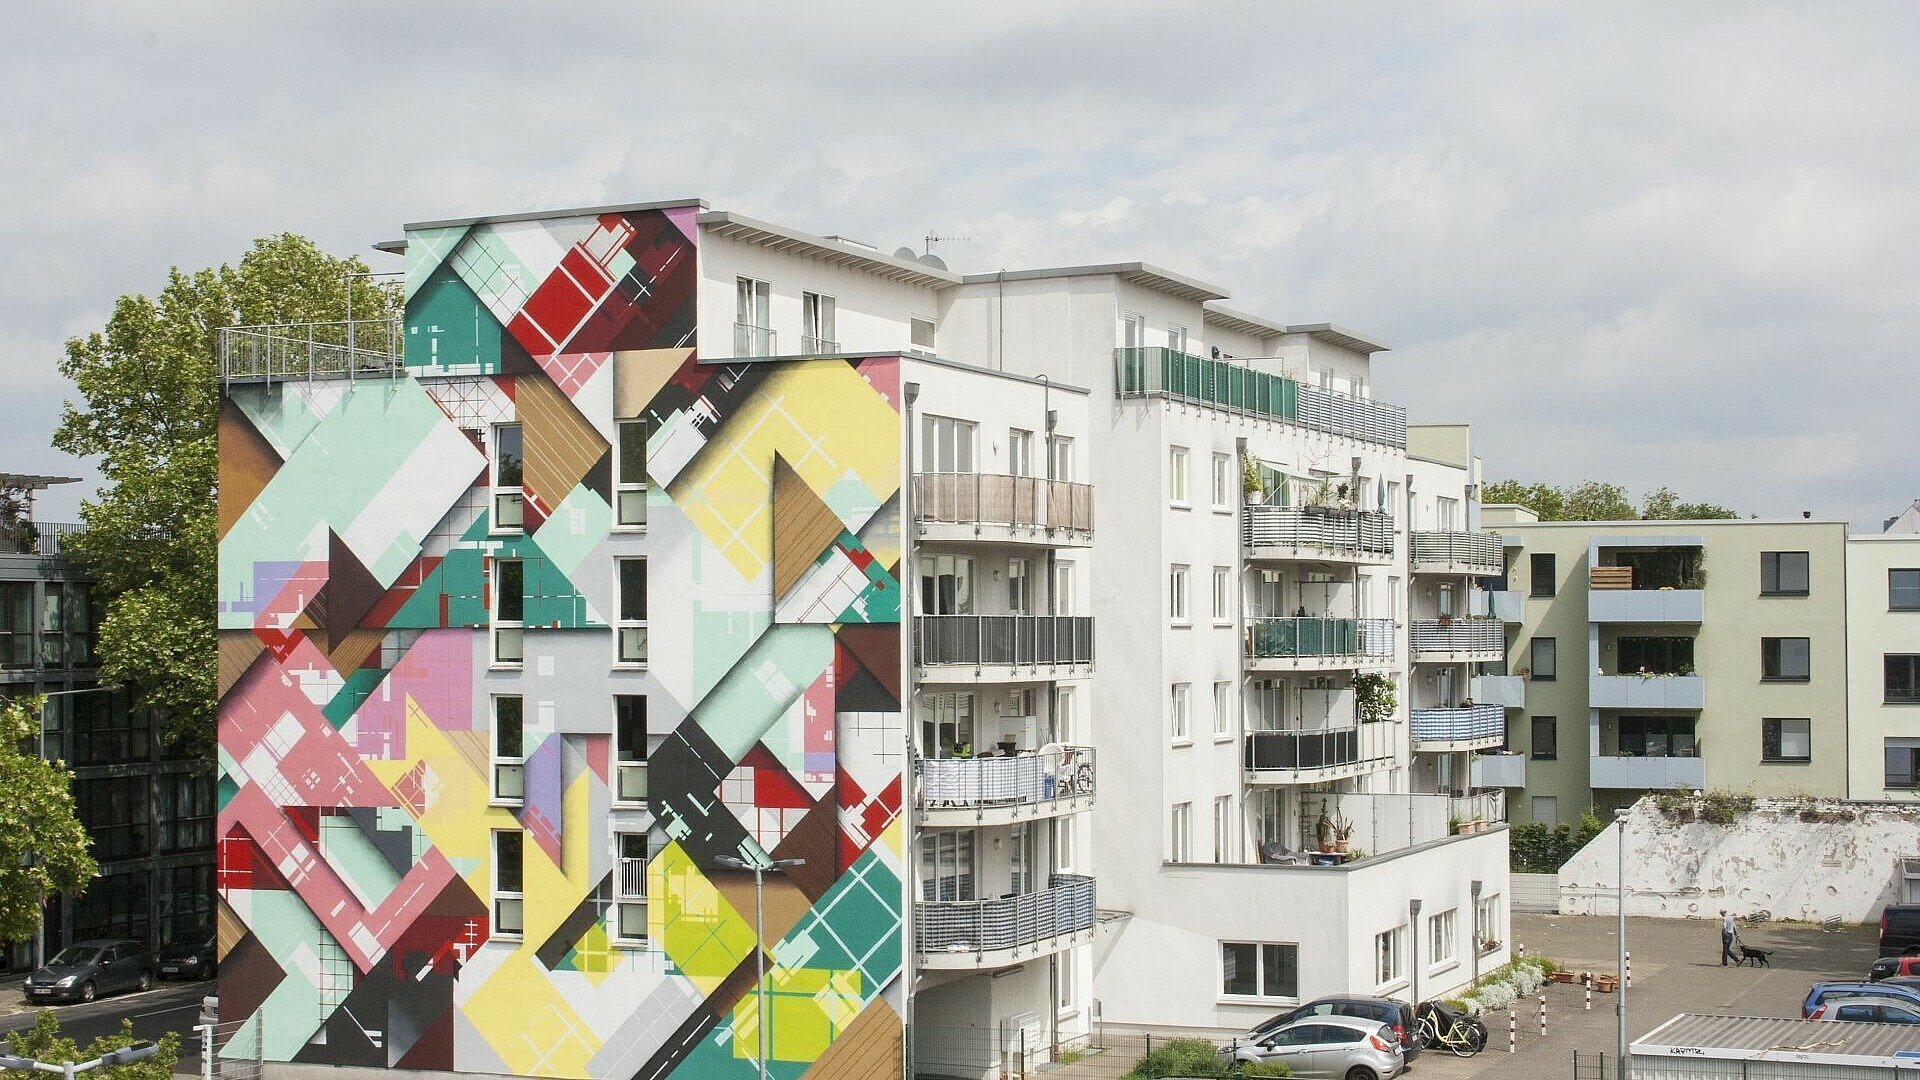 Mural von Zedz in Köln-Ehrenfeld an der Leyendeckerstraße